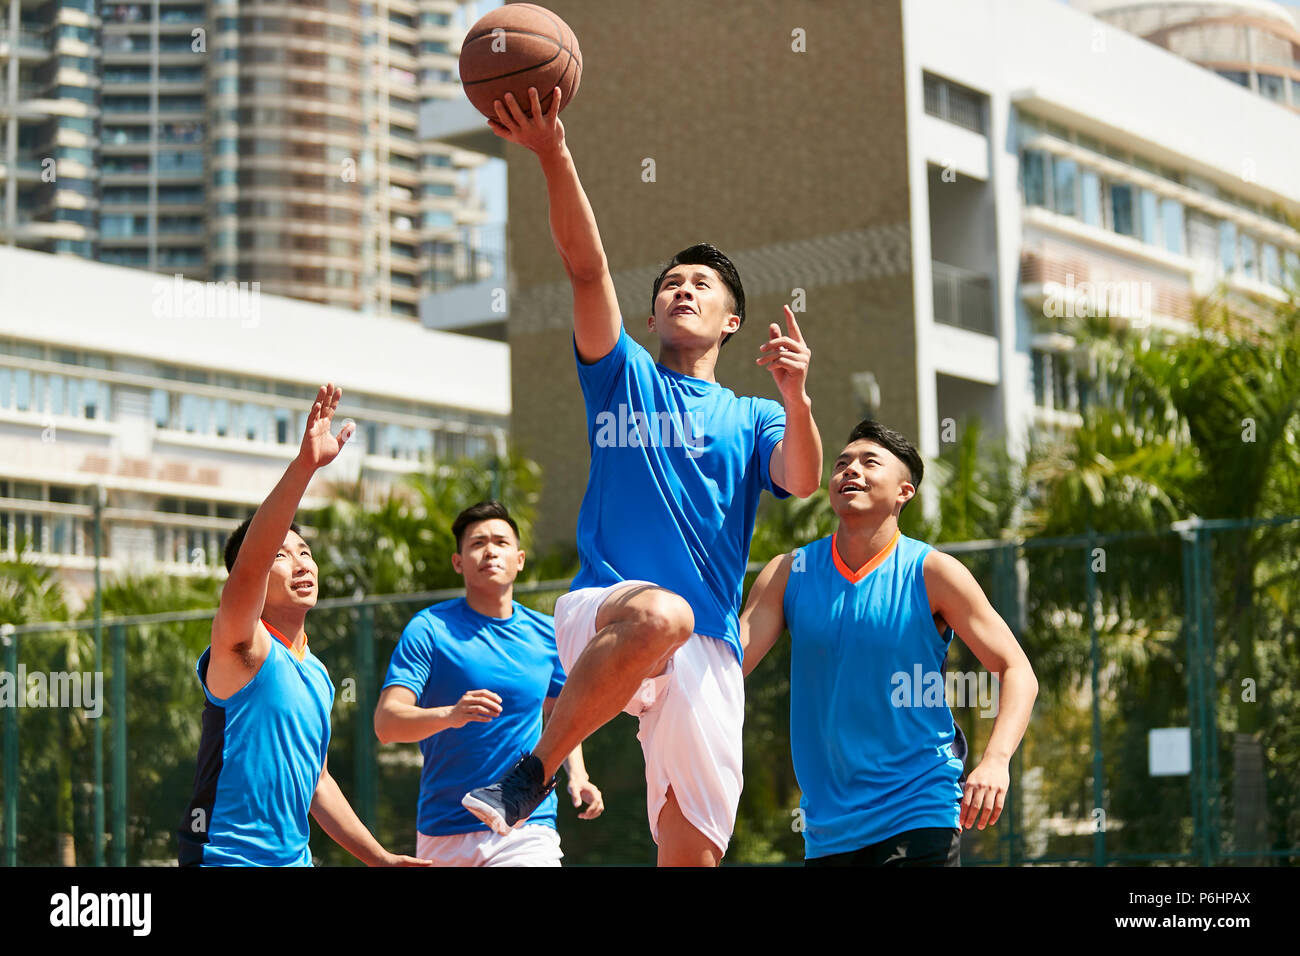 Jungen asiatischen erwachsenen männlichen Spieler spielt Basketball auf einem städtischen Außenplatz. Stockfoto